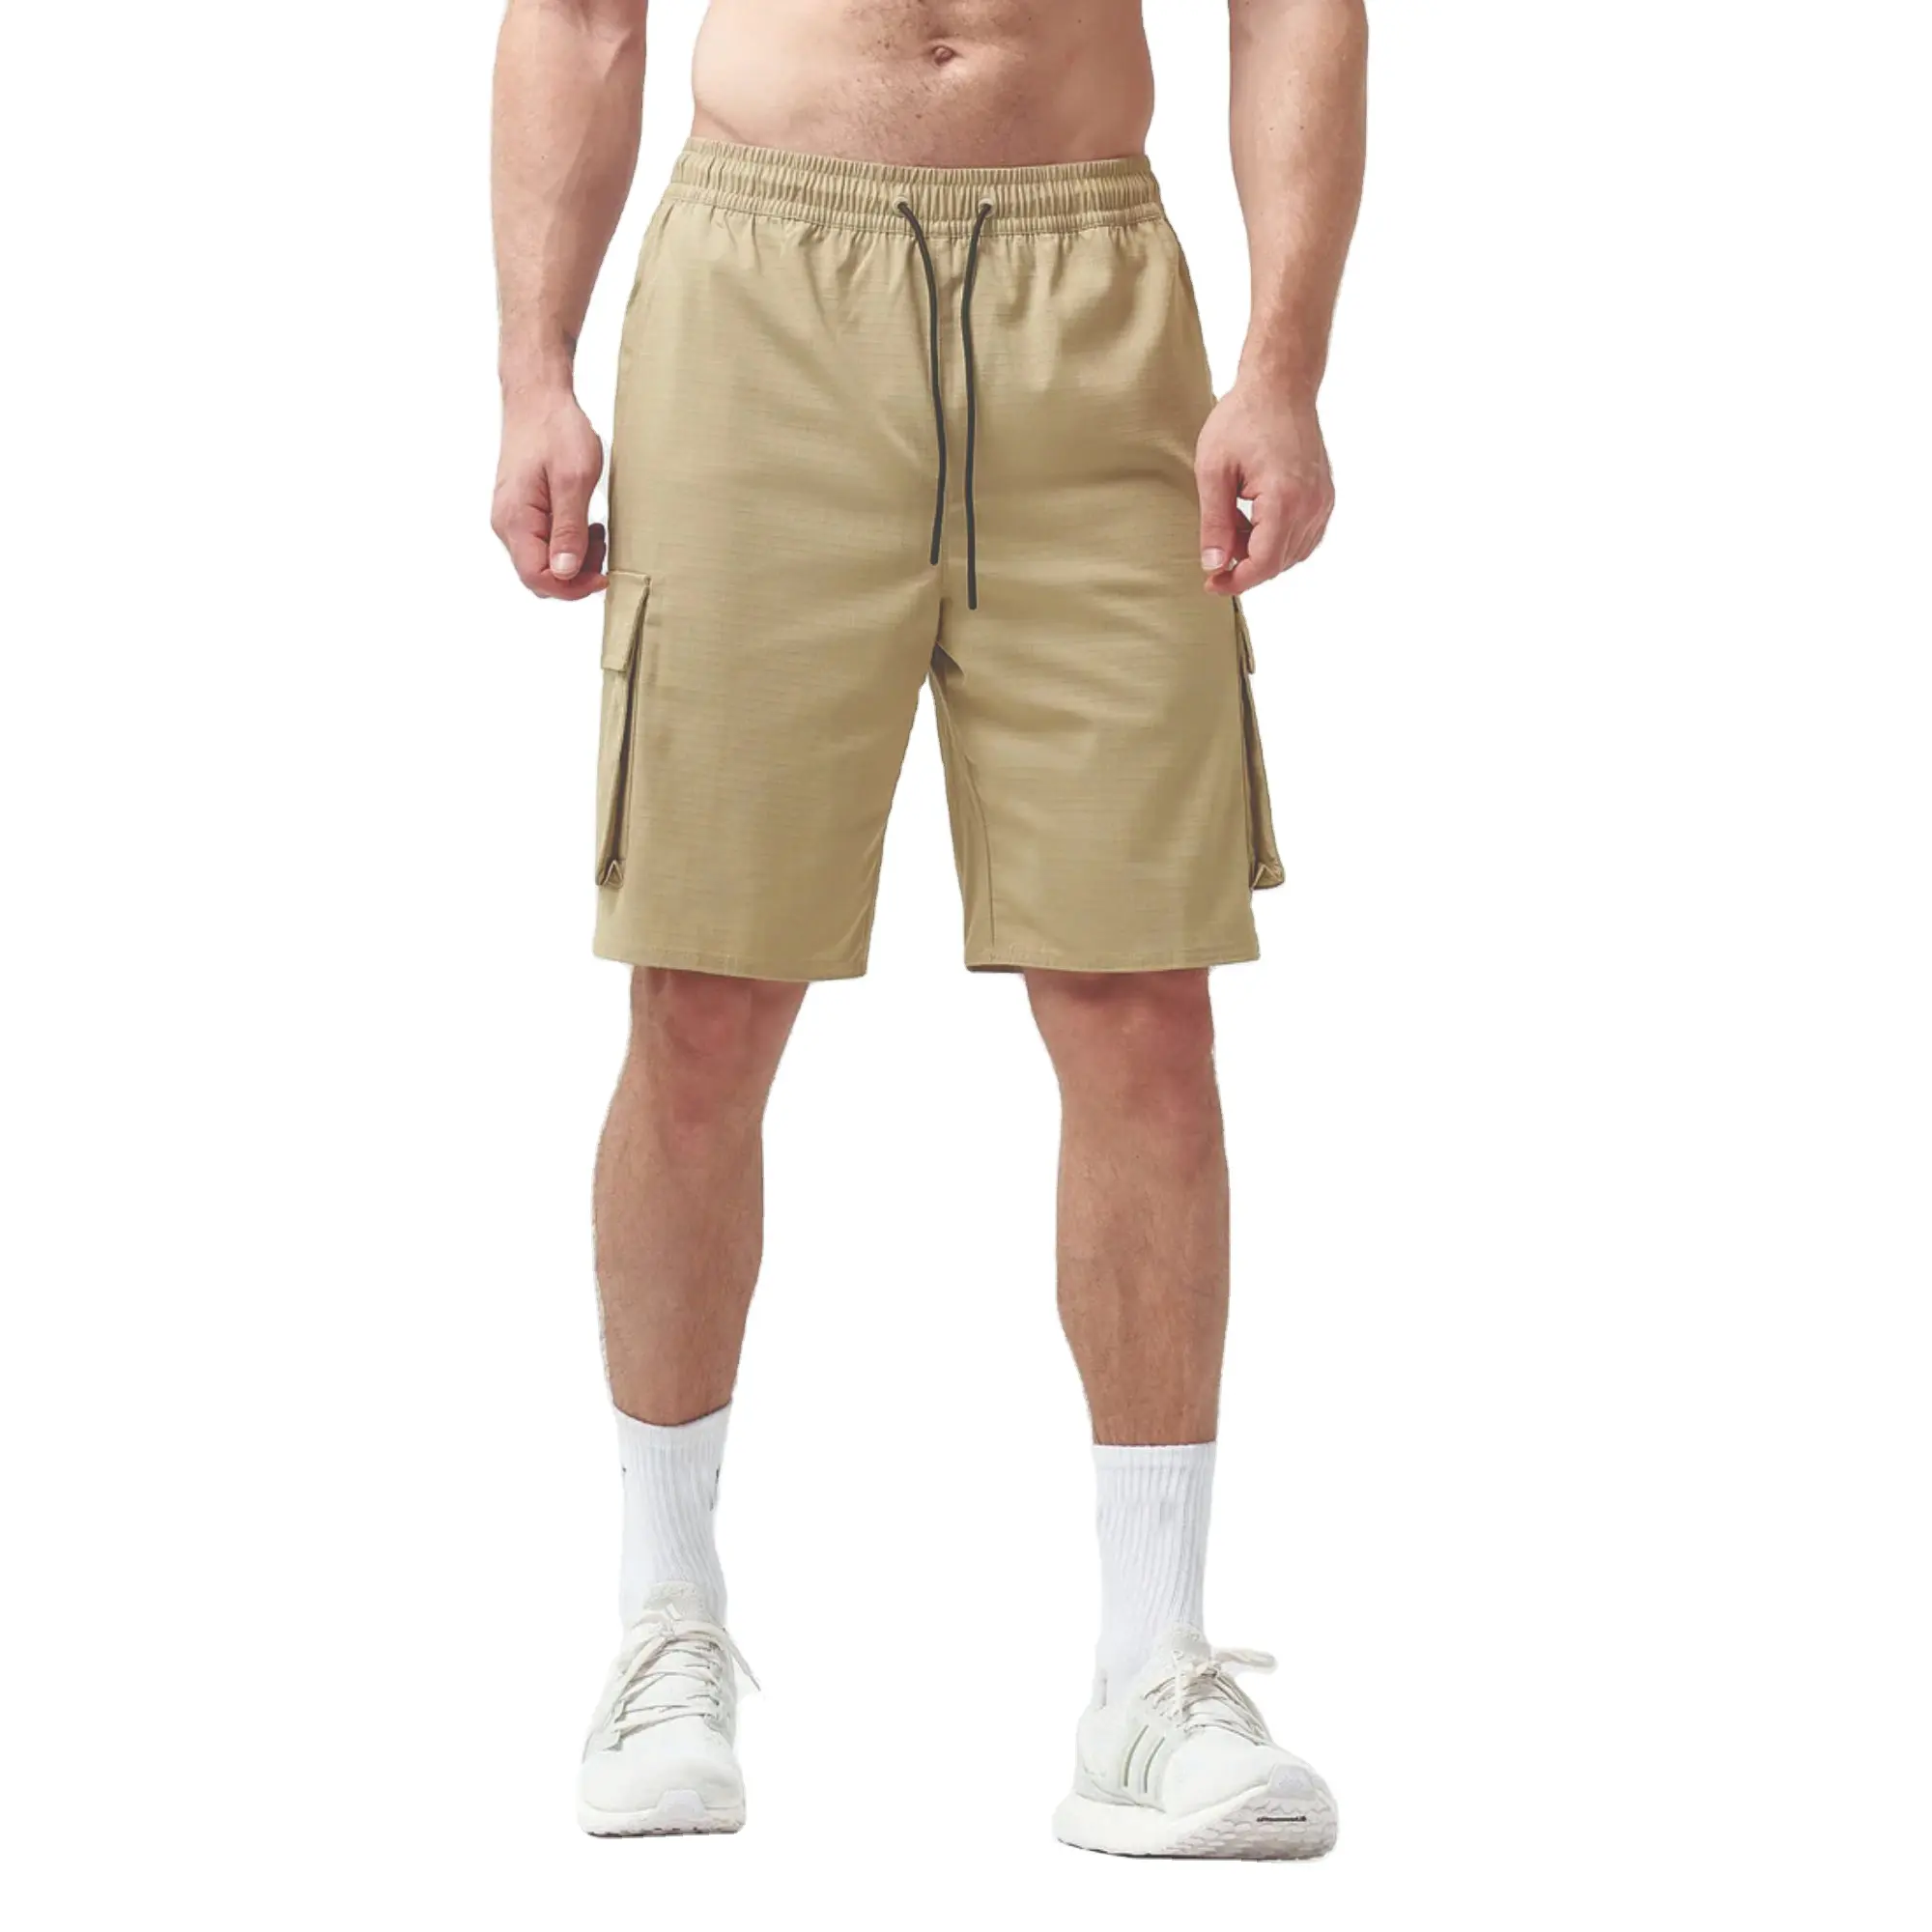 65% poliéster 33% rayon 2% elastano código verde líquem profundo 2 em 1 shorts cargo na altura do joelho com estampa de contraste personalizado